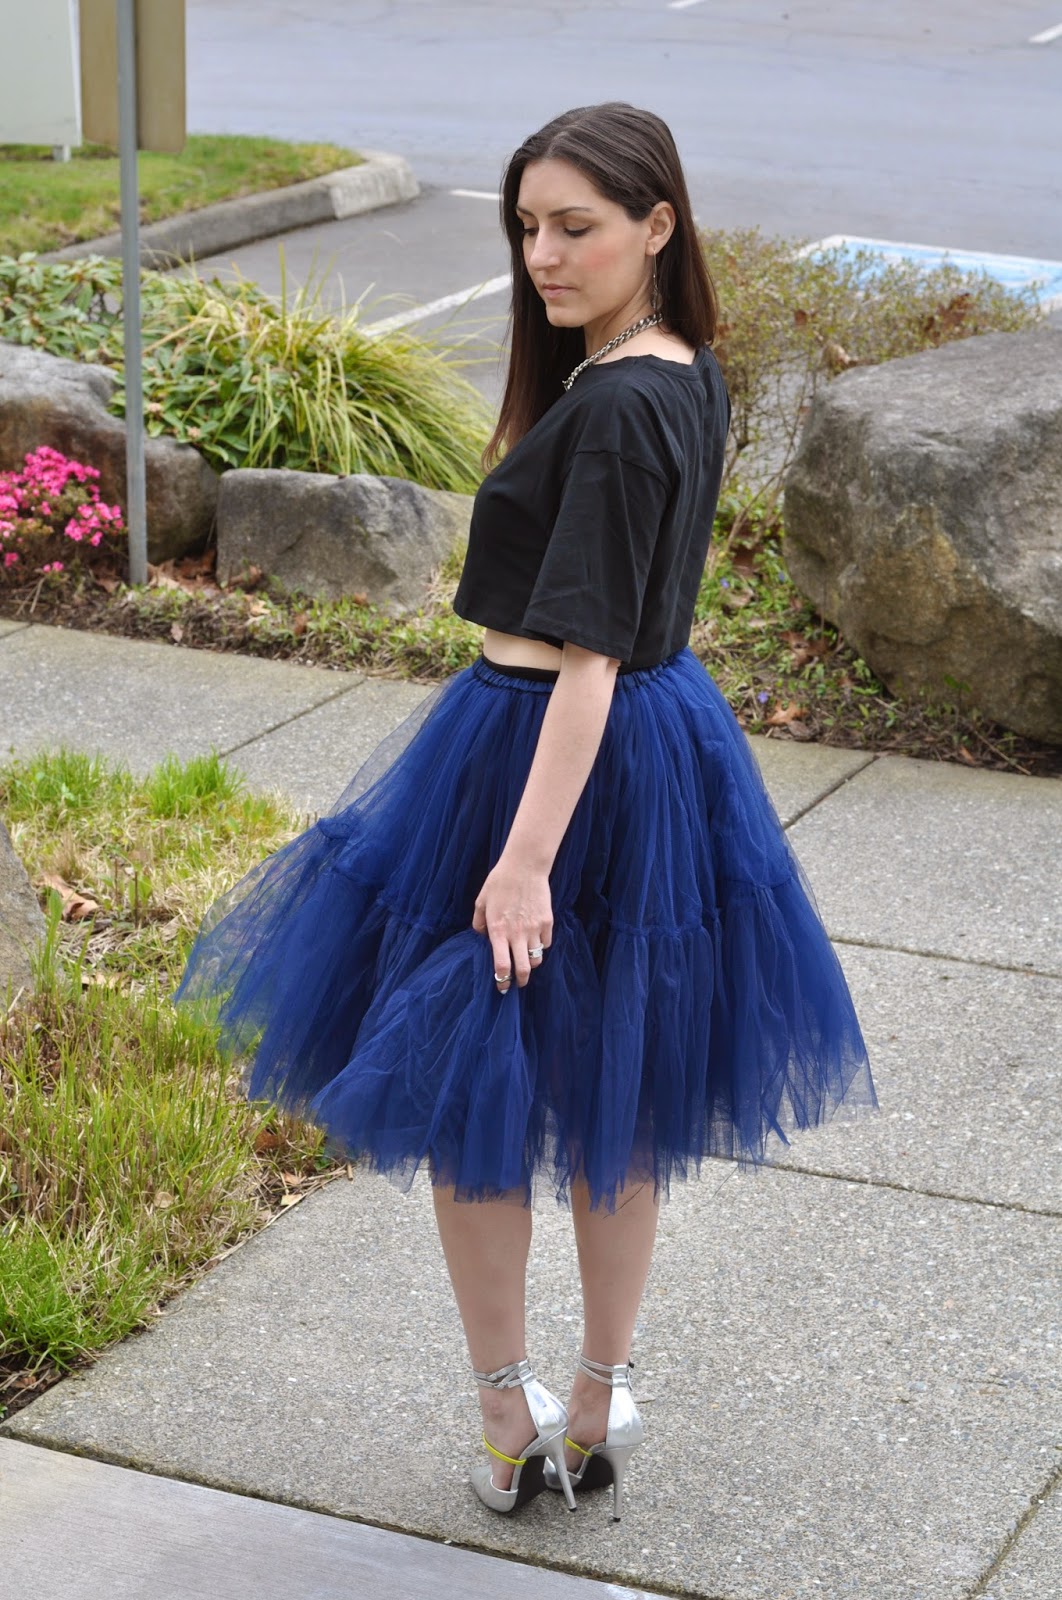 Kiki Simone Fashion - Fashion blog by Kiki Simone Williamson: clothing ...